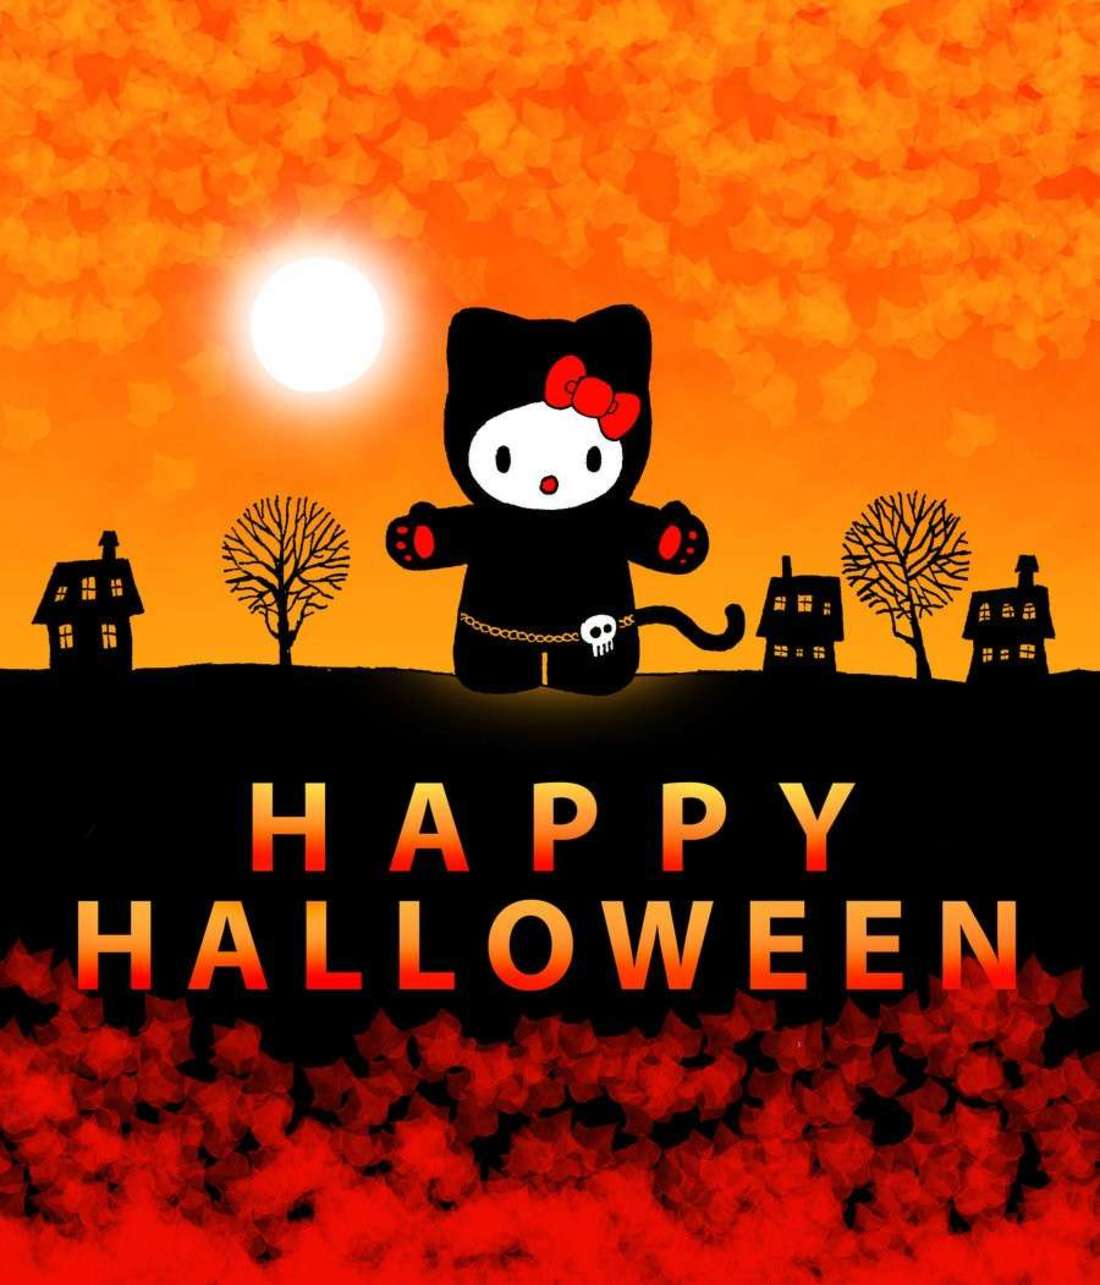 Buon Halloween immagini da condividere gratis